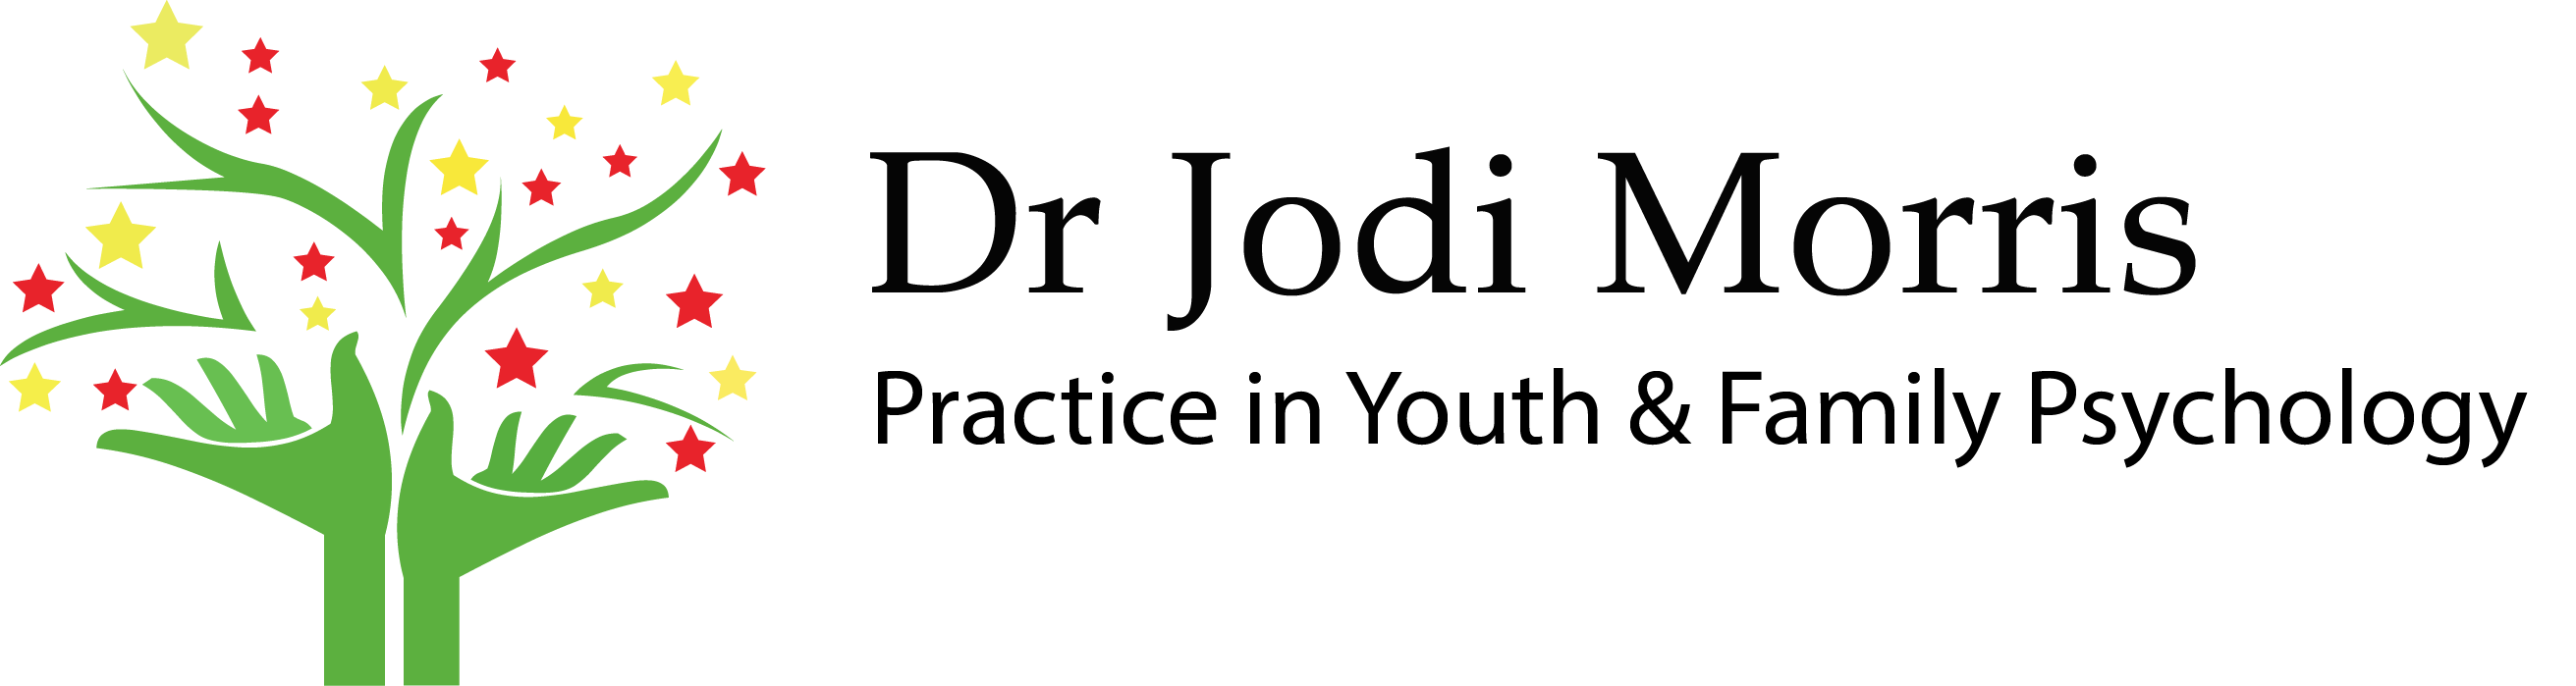 Dr. Jodi Morris